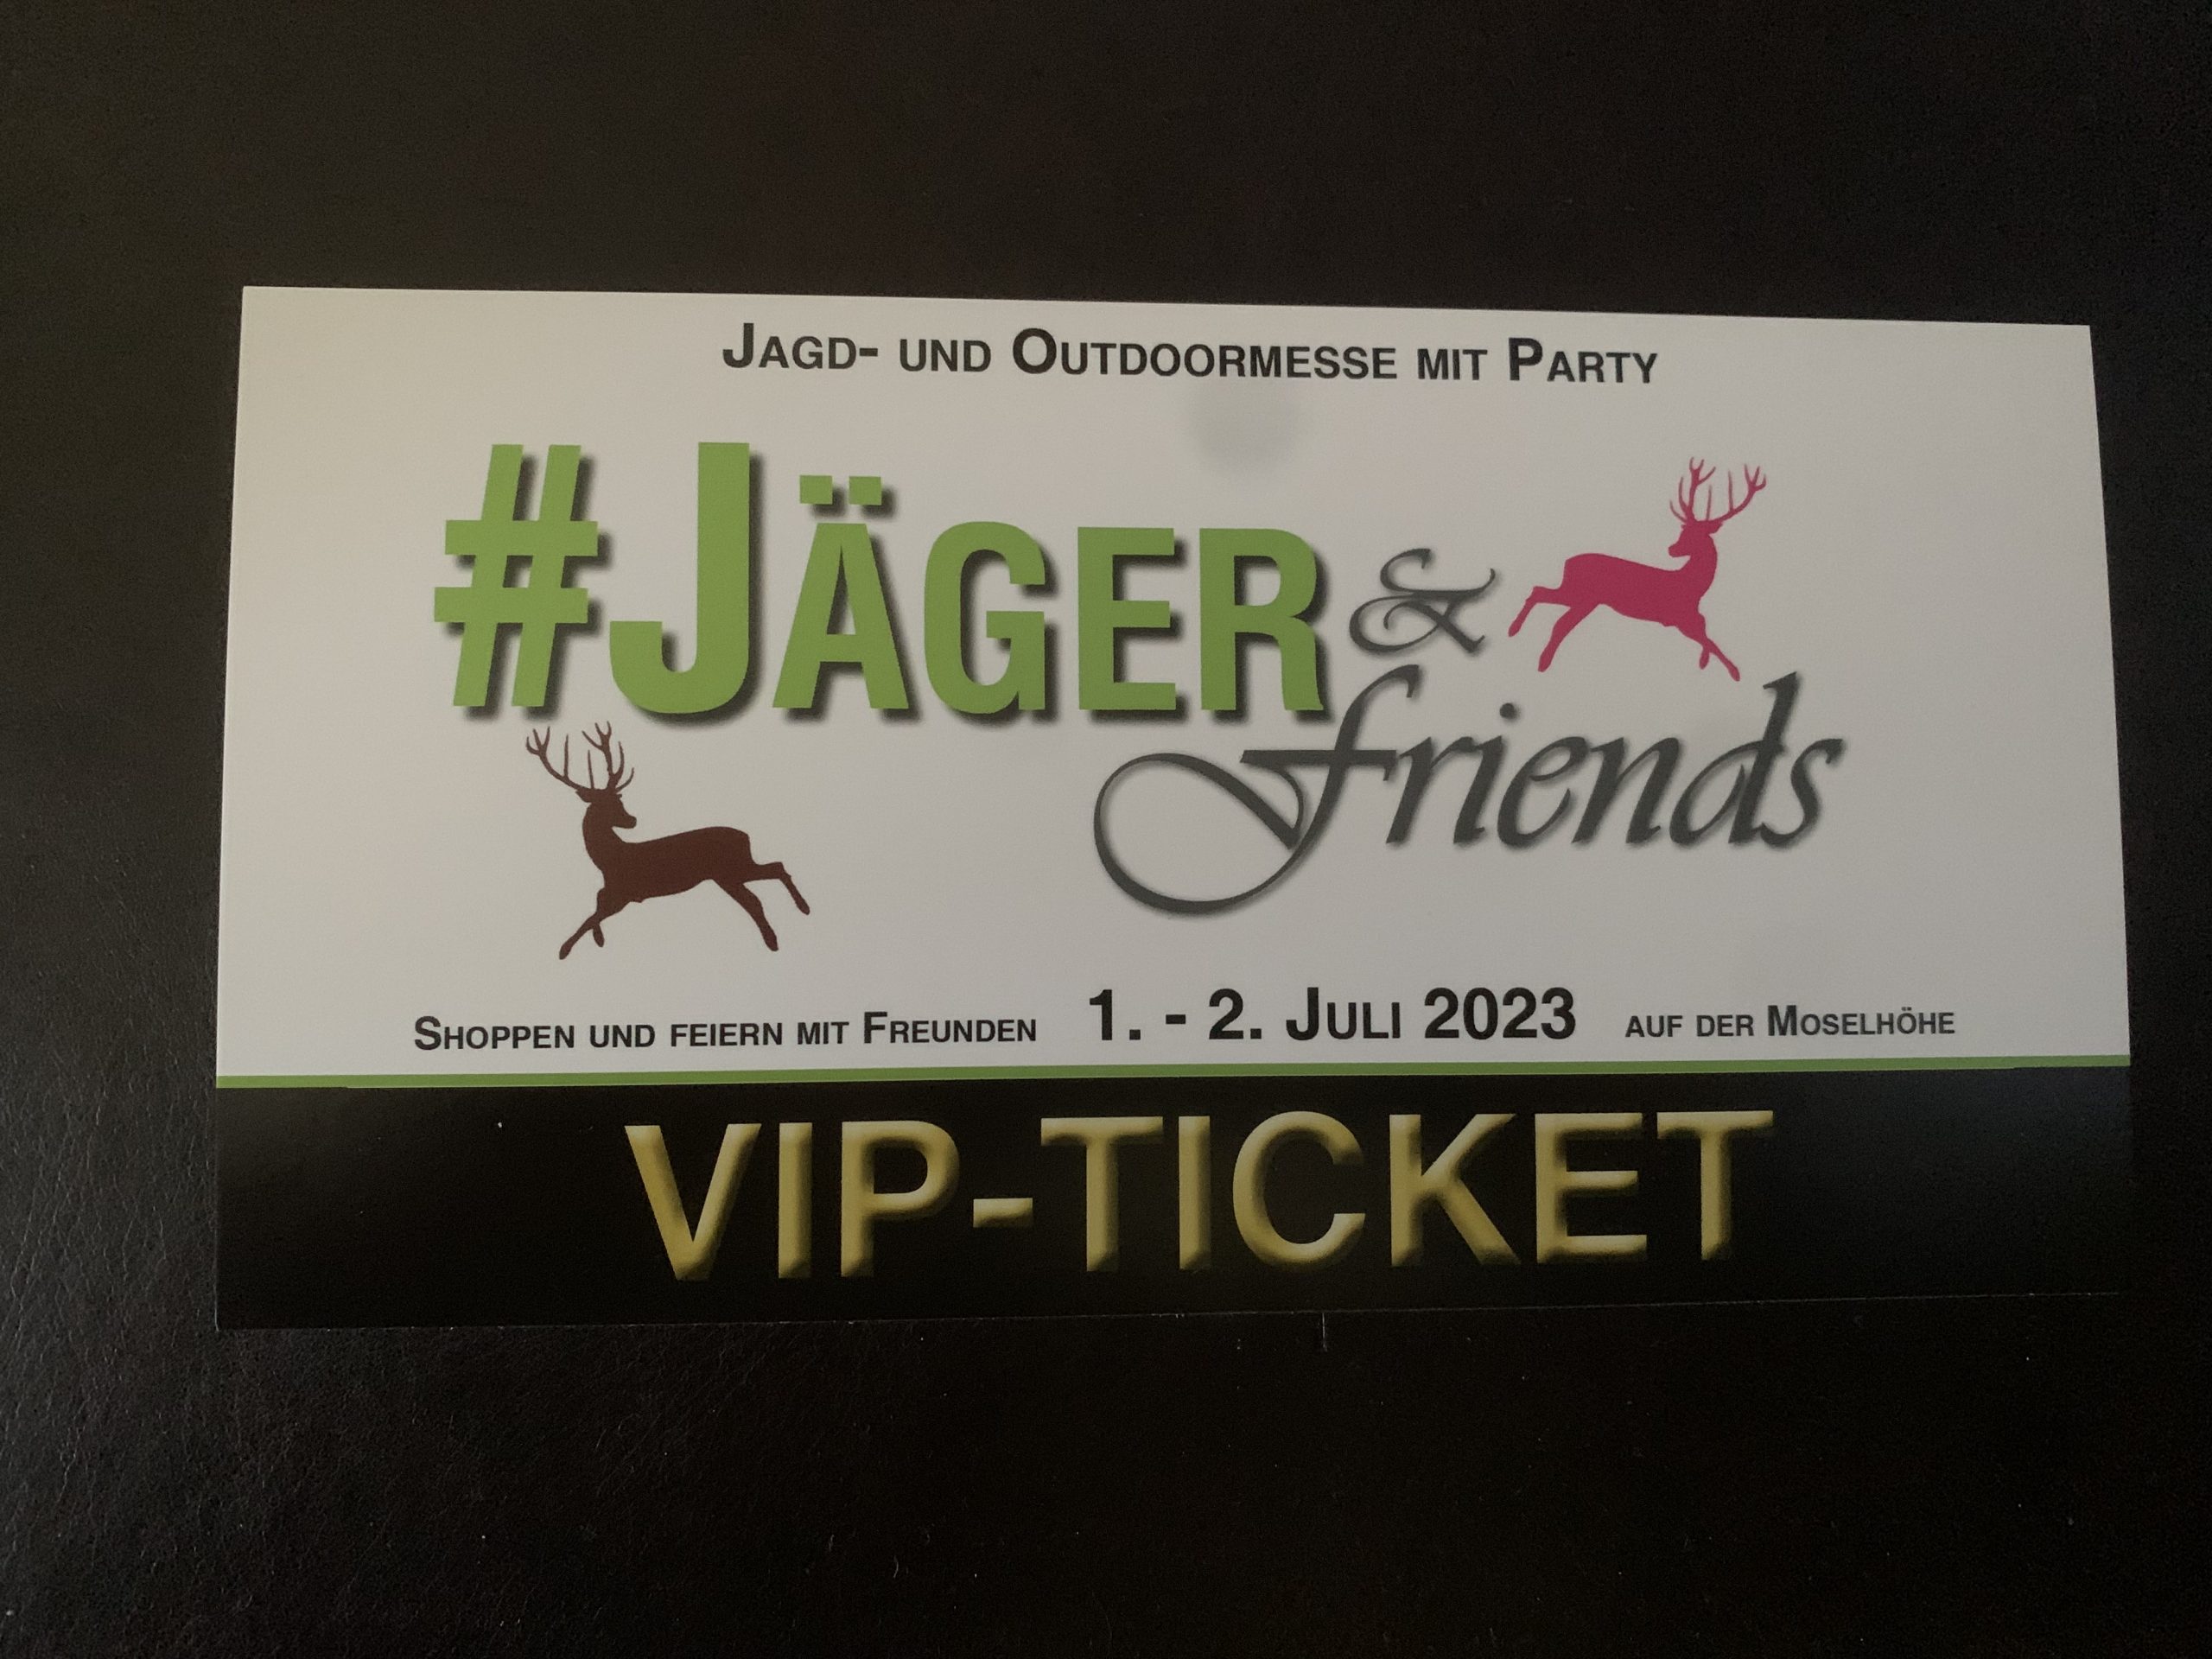 VIP-Ticket für die Jagd- und Outdoormesse #Jäger & friends